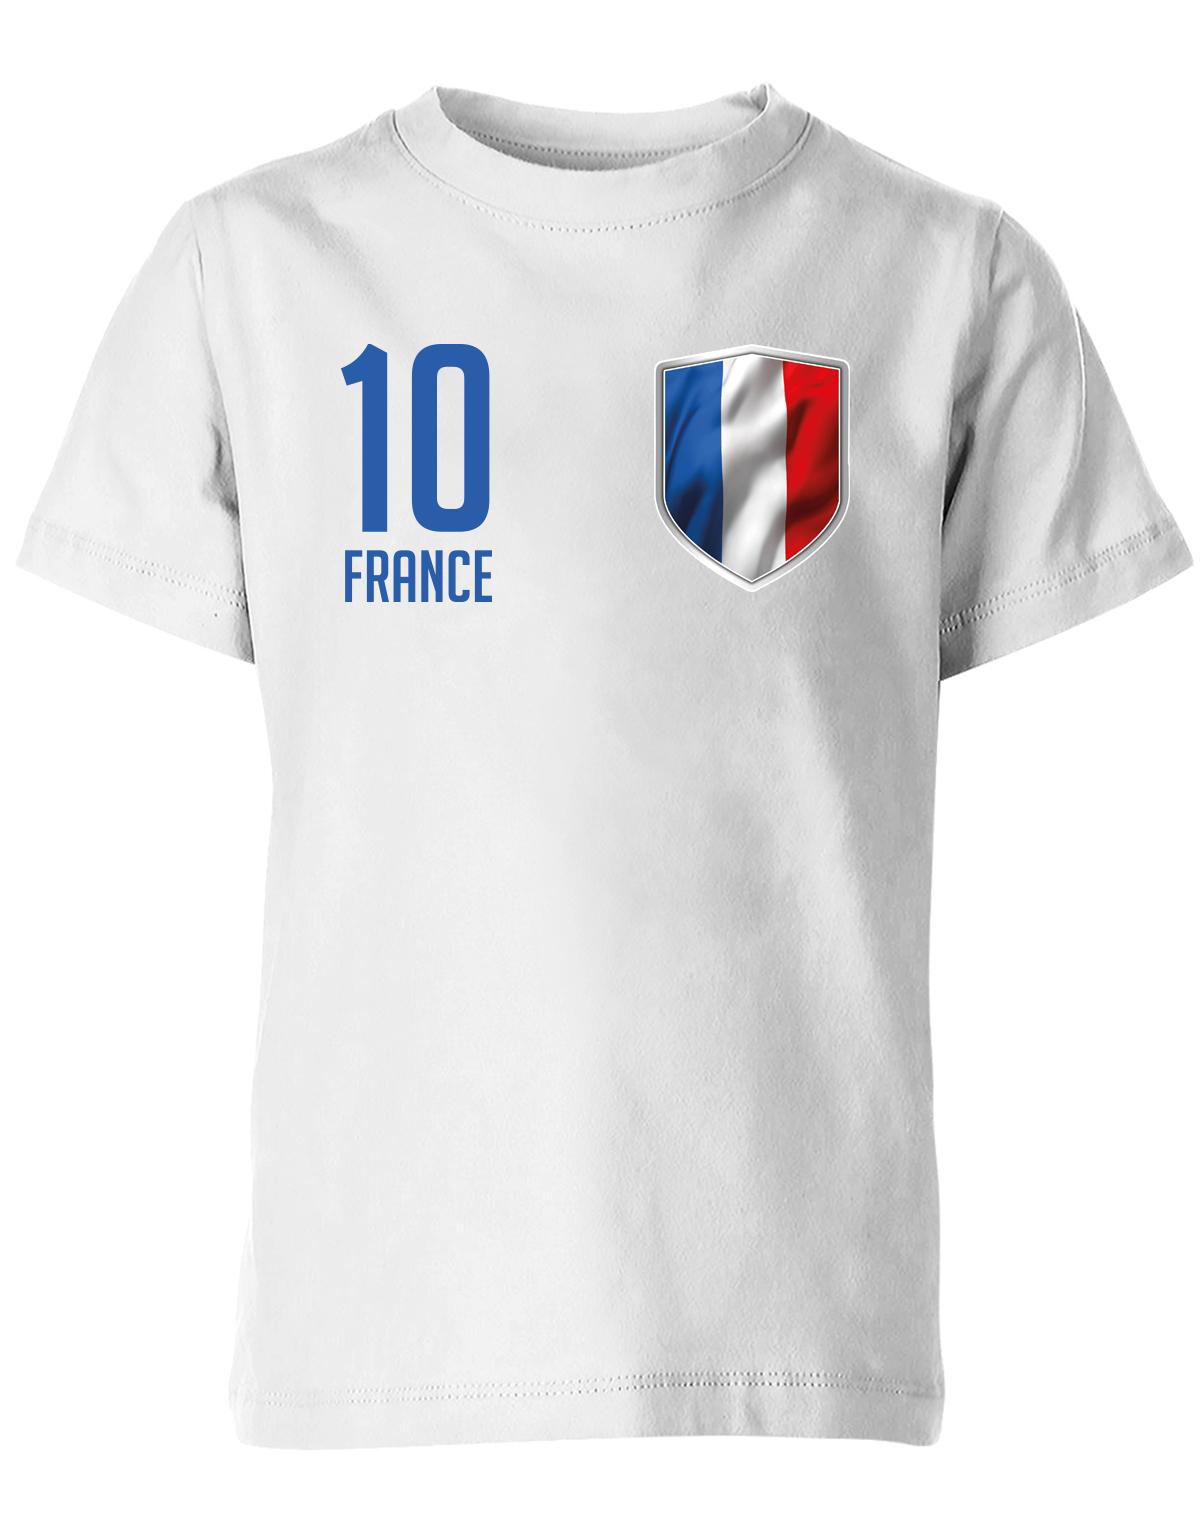 France-10-Kinder-Shirt-Weiss